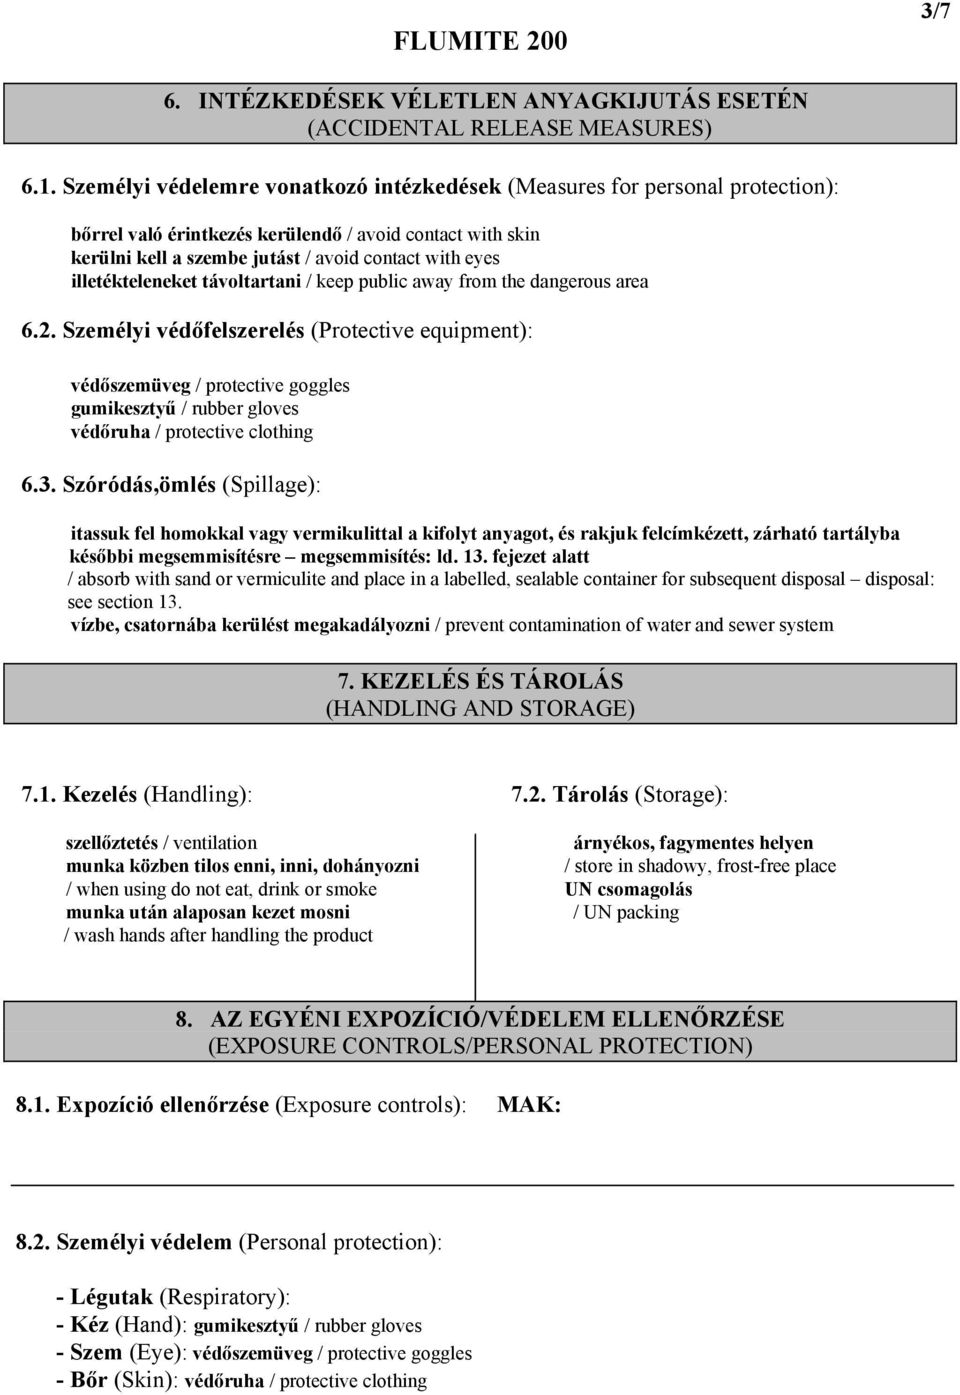 BIZTONSÁGI ADATLAP / SAFETY DATA SHEET (91/155-93/112/EGK/EEC) - PDF  Ingyenes letöltés